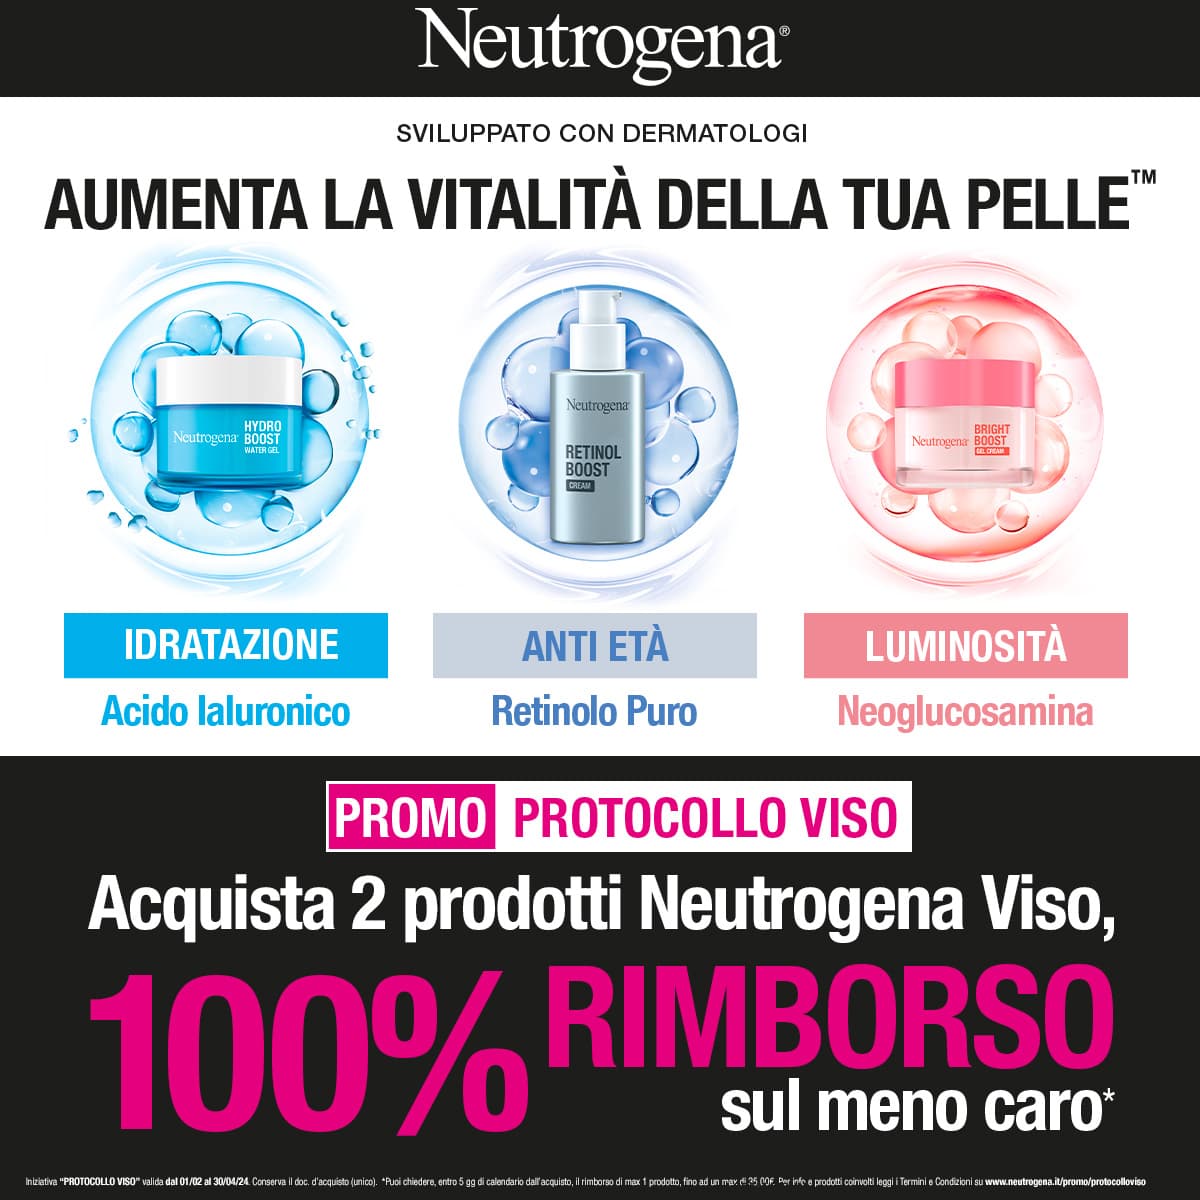 Neutrogena Promo protocollo viso: Acquista 2 prodotti Neutrogena Viso, 100% di rimborso sul meno caro! mobile